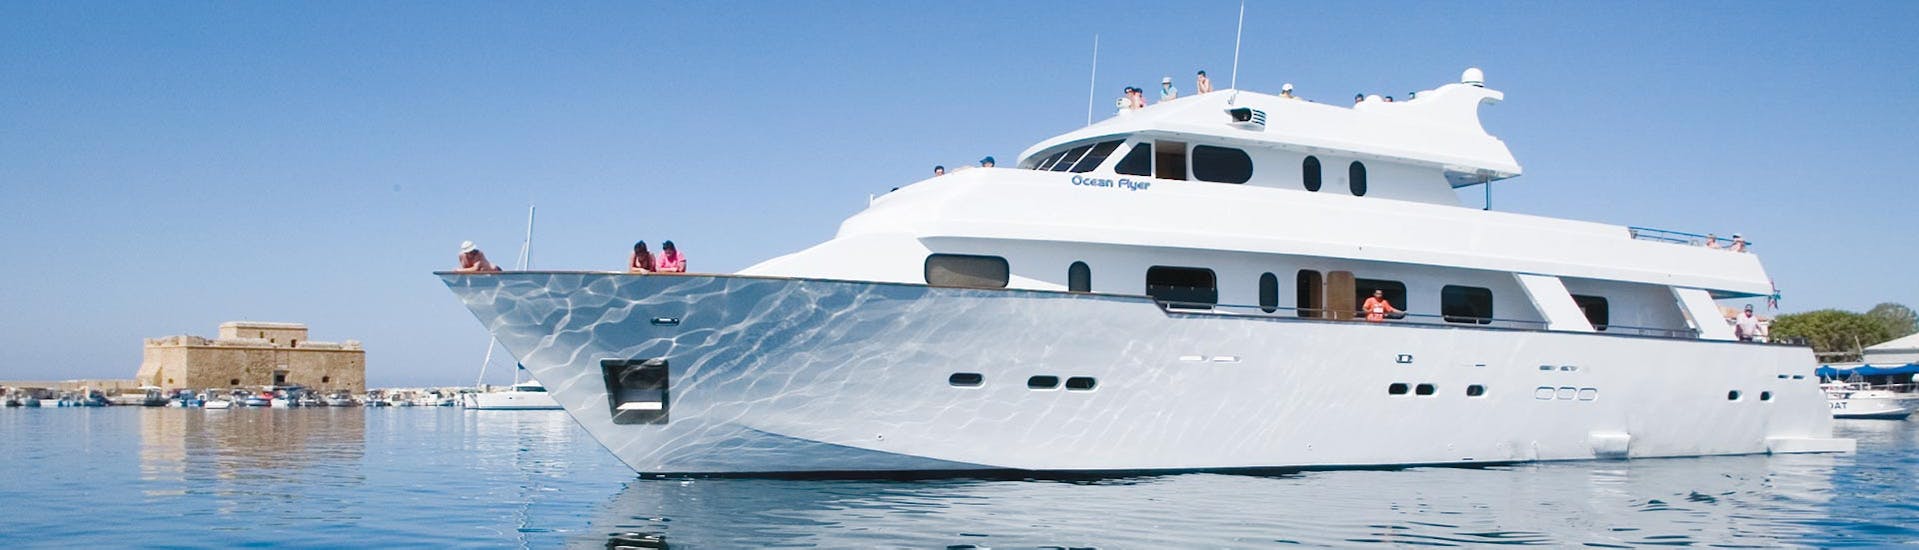 De Ocean Flyer ging voor anker tijdens een luxe jachtreis naar Coral Bay en de zeegrotten - alleen voor volwassenen met Paphos Sea Cruises.